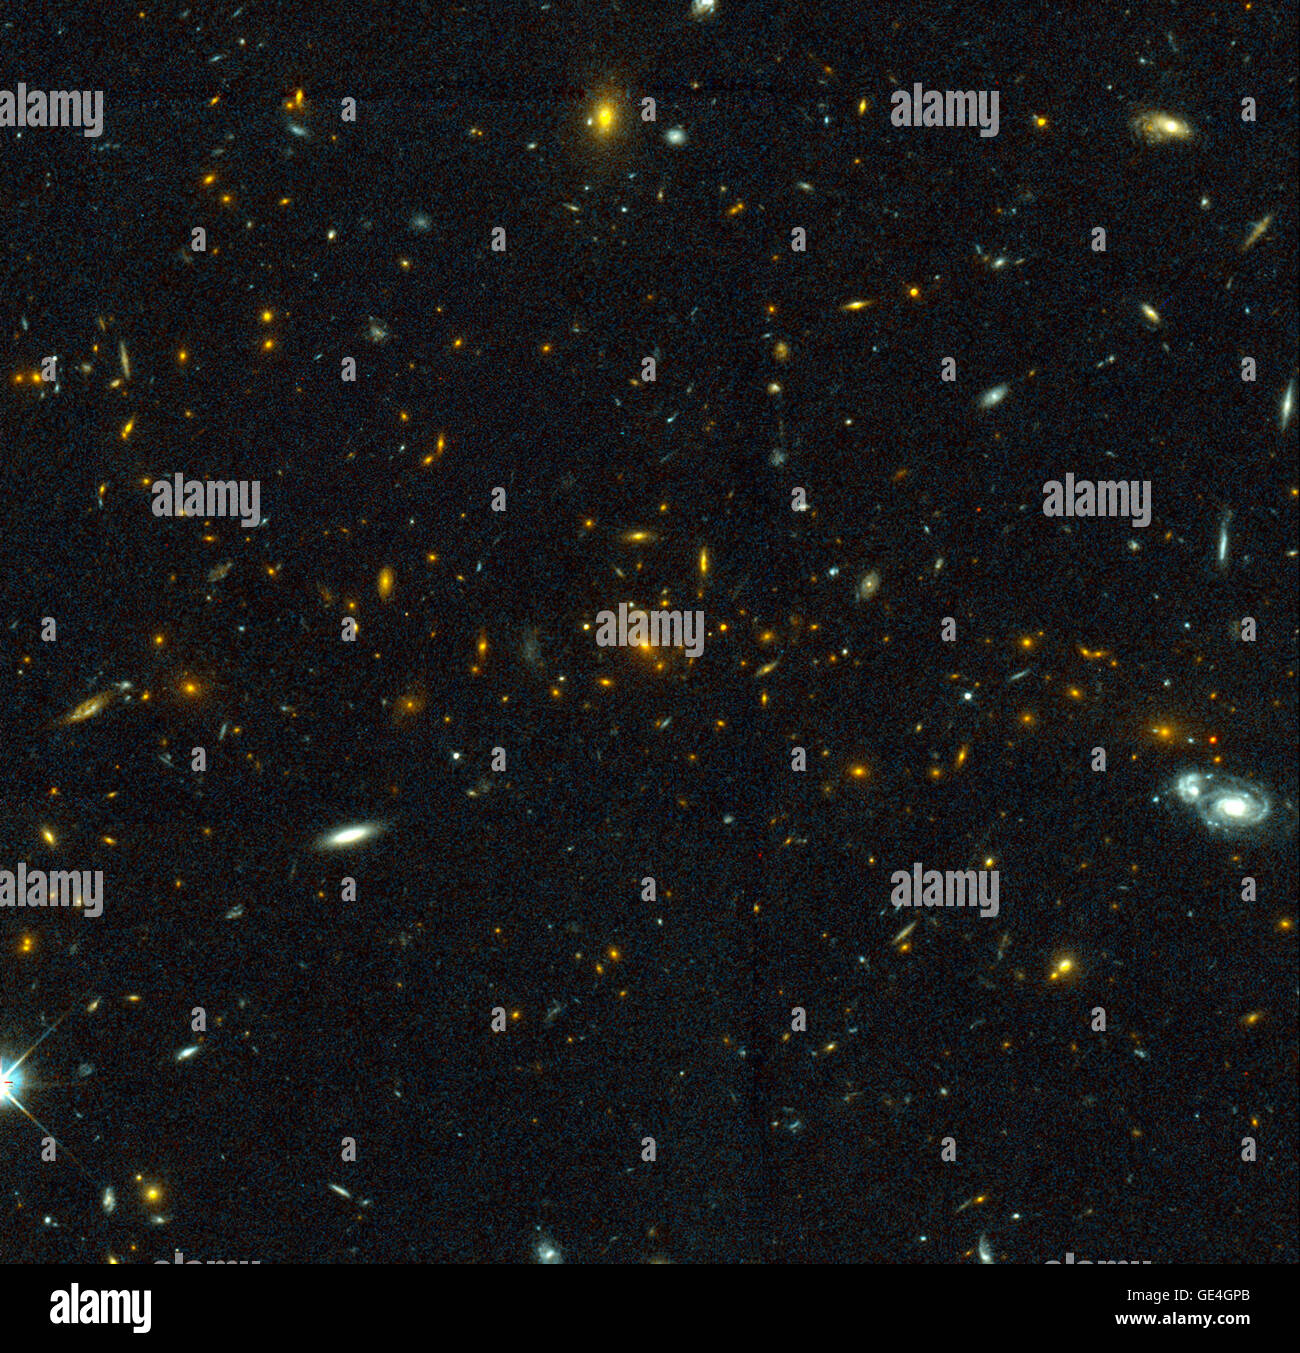 (Luglio 15, 1999) eccitante Telescopio Spaziale Hubble immagini di più di una dozzina di molto distanti la collisione di galassie indicano che, almeno in alcuni casi, grandi galassie massive forma attraverso collisioni tra quelli più piccoli, in una generazione dopo generazione storia infinita. L'immagine di Hubble mostra la coppia di galassie molto vicino insieme con i flussi di stelle venga tirato fuori delle galassie. La collisione di "genitore" galassie perdono la loro forma e le galassie più fluide sono formate. Tutto il processo di fusione può richiedere meno di un miliardo di anni. Il Telescopio Spaziale Hubble impressionata 81 galassie nella galassia Foto Stock